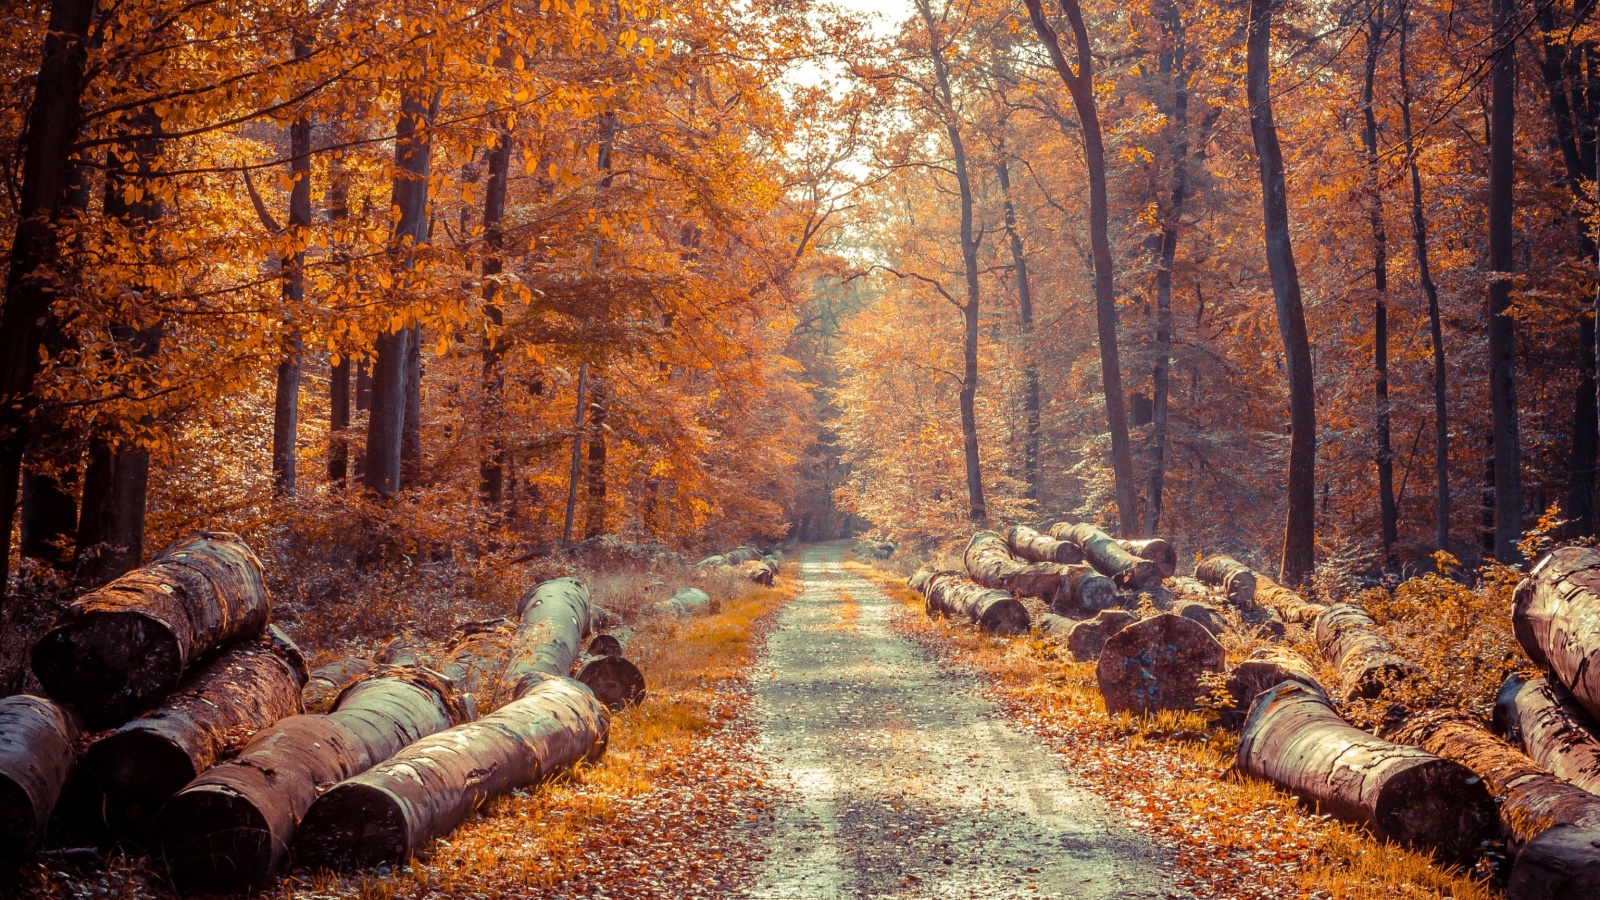 Das Road in the wild autumn forest Wallpaper 1600x900